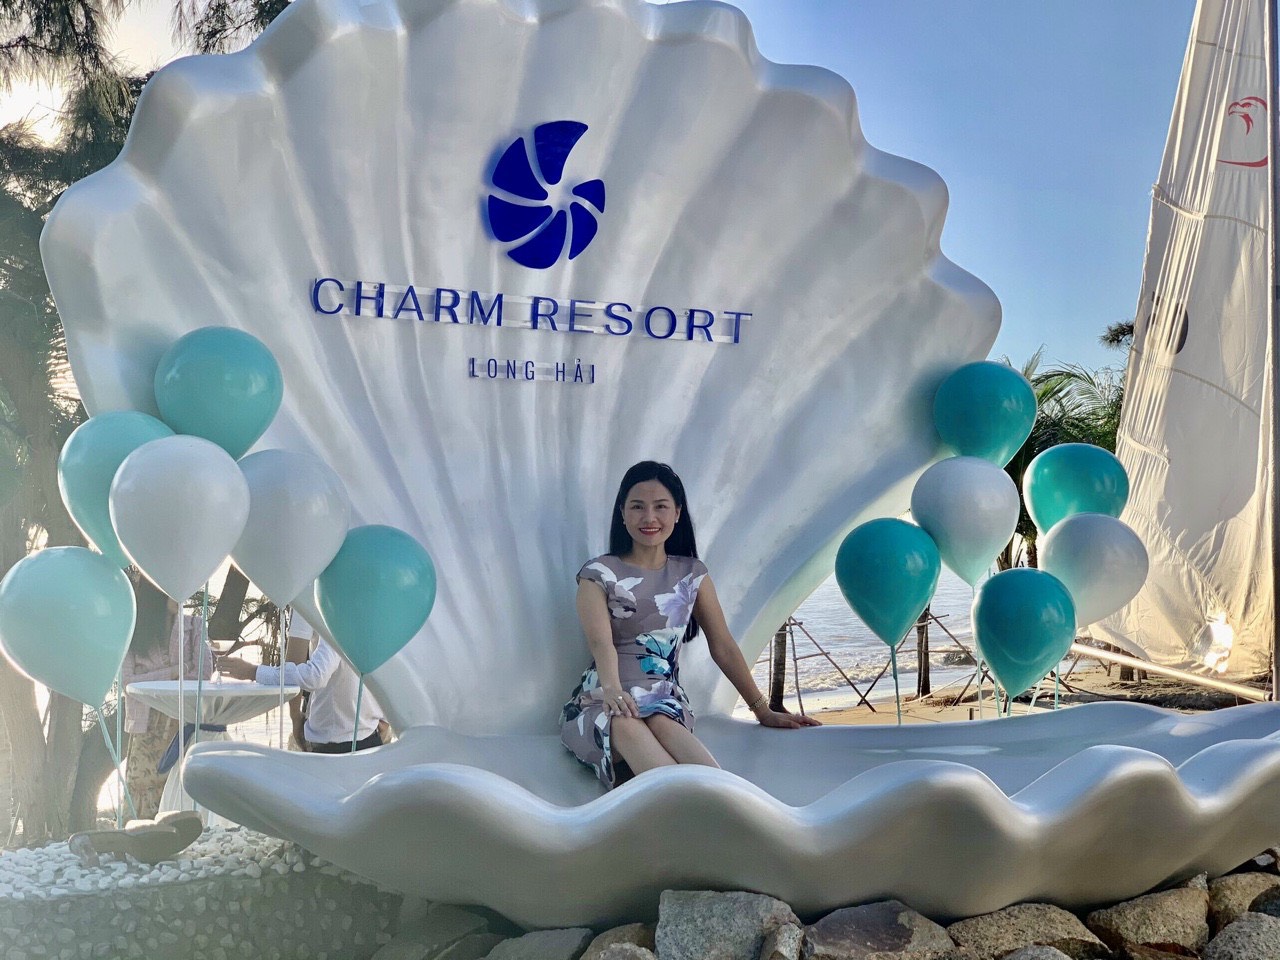 Ngoài Charm Resort Long Hải, sản phẩm của Thế Giới Xe Chạy Điện được các công trình quy mô như Vinhomes Ocean Park, Kim Ngan Hills, Thăng Long Bay,…lựa chọn